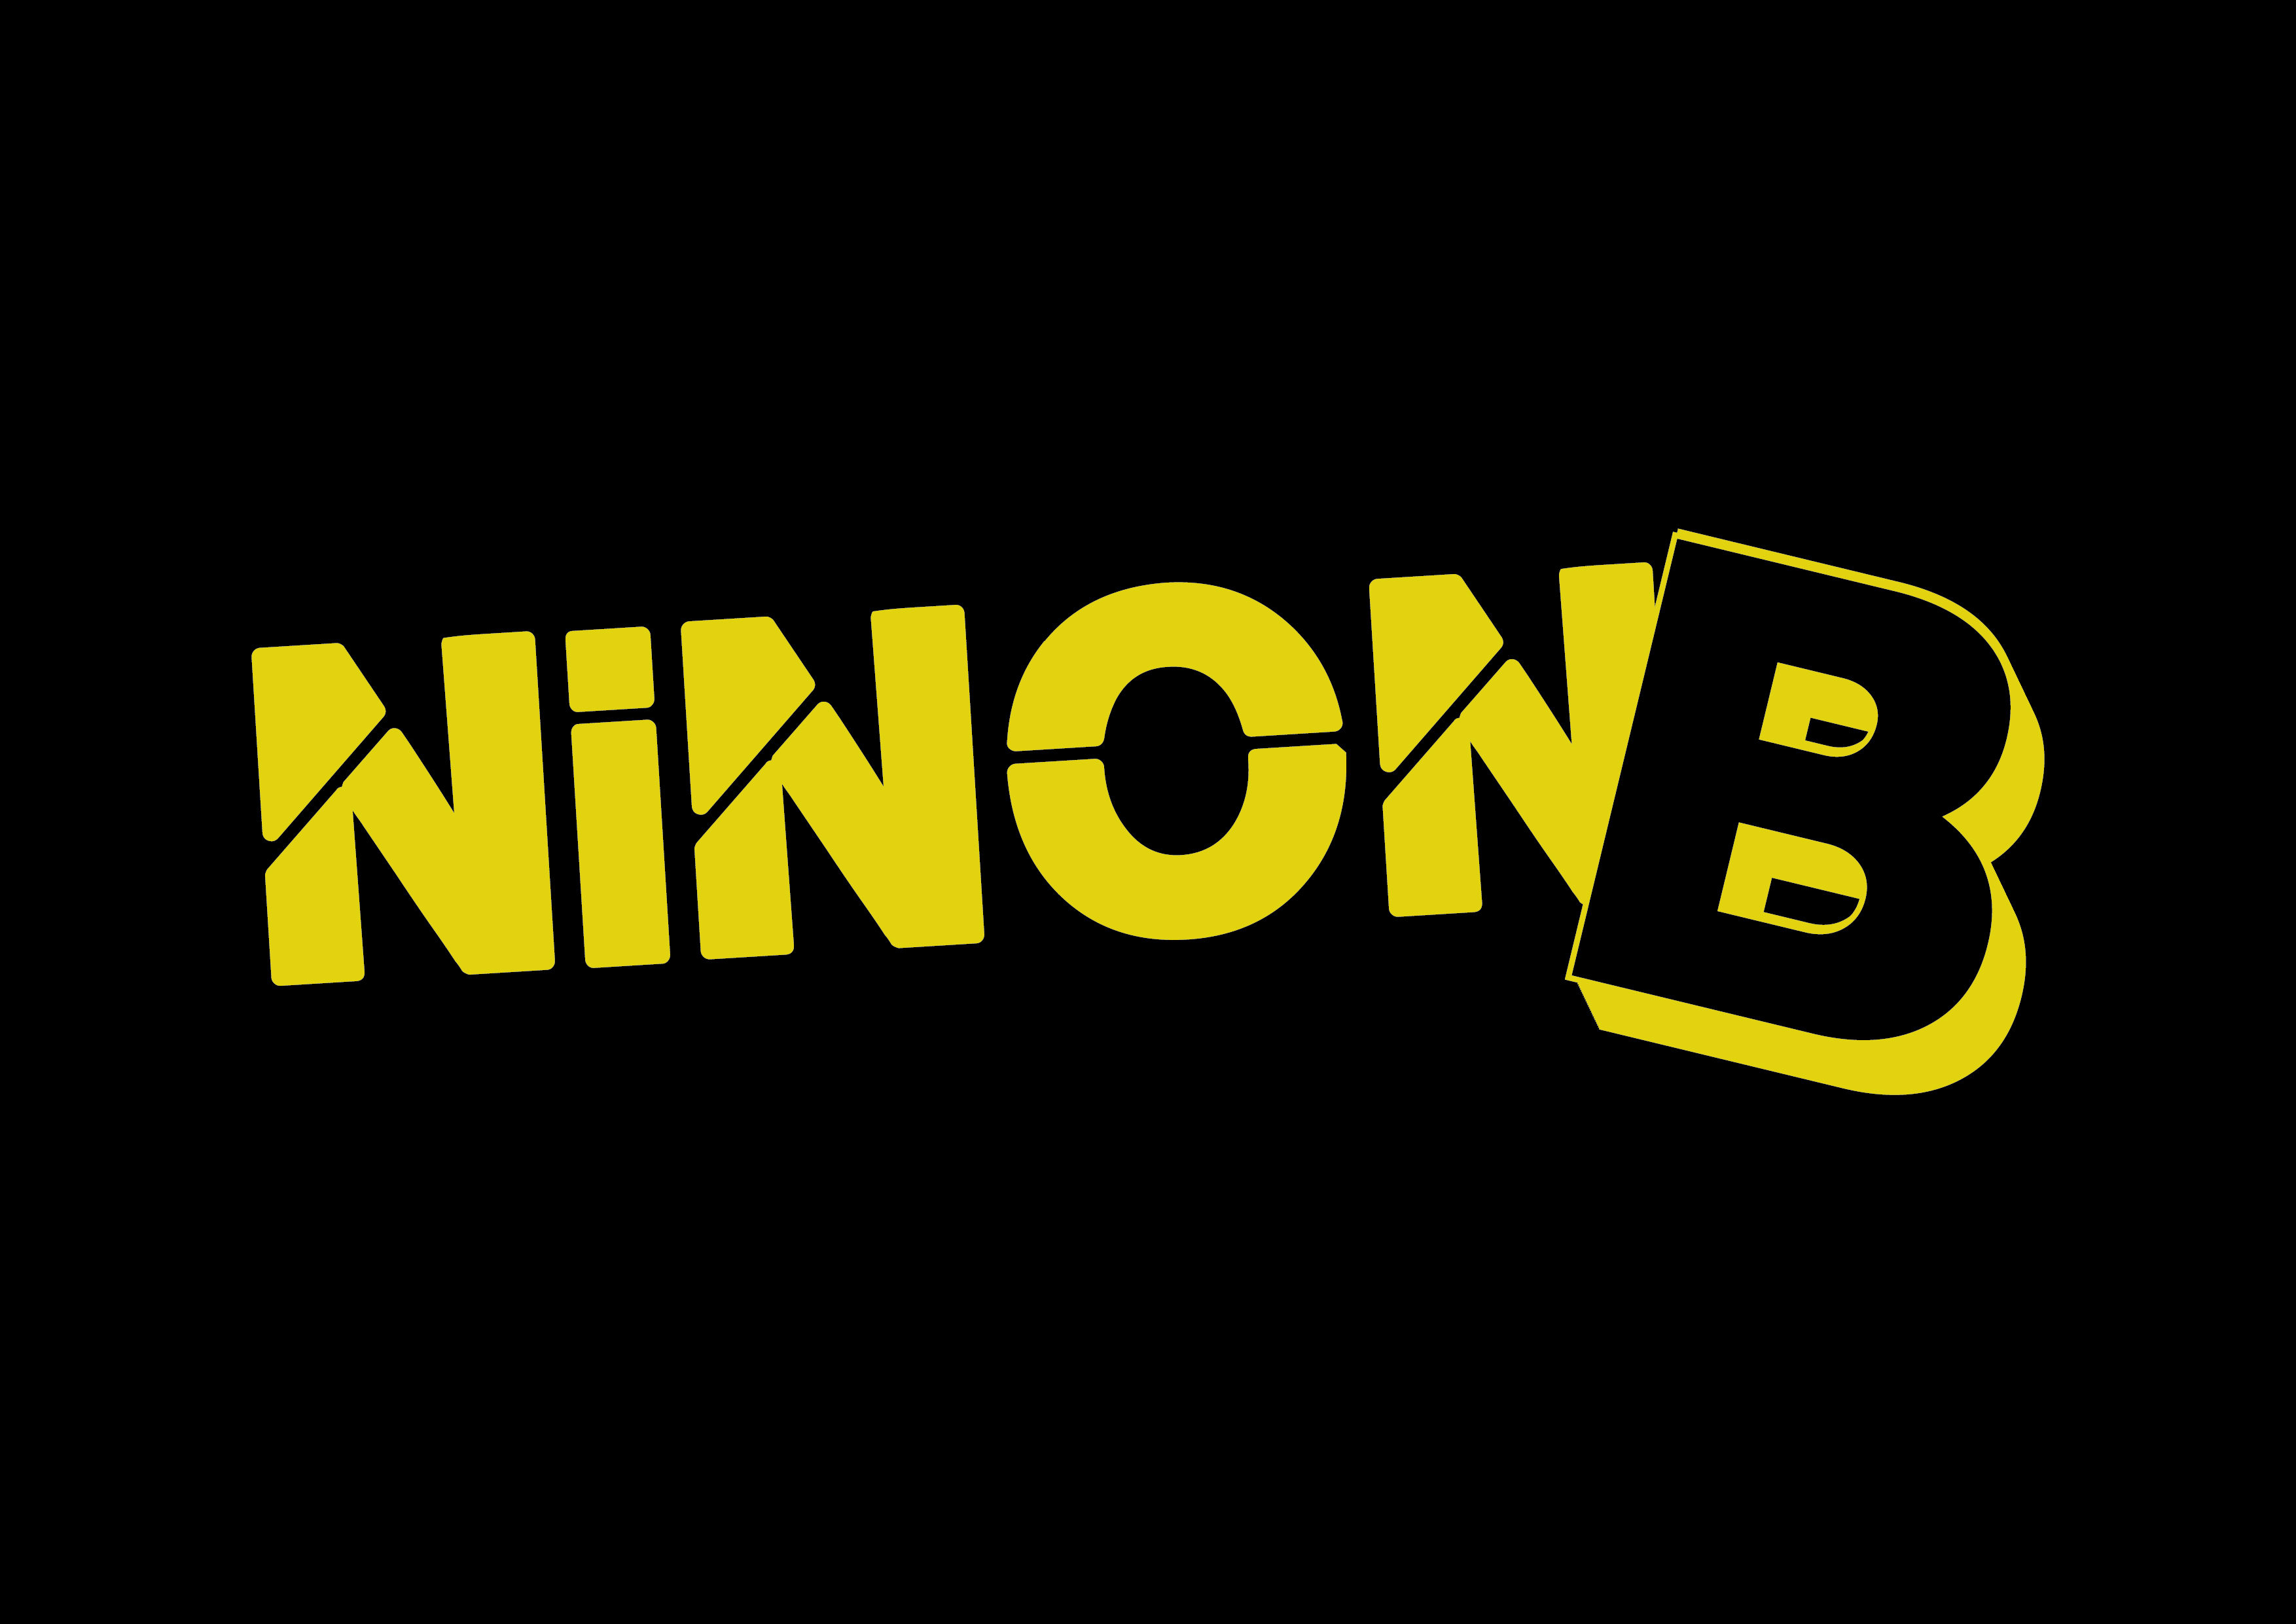 NINON B